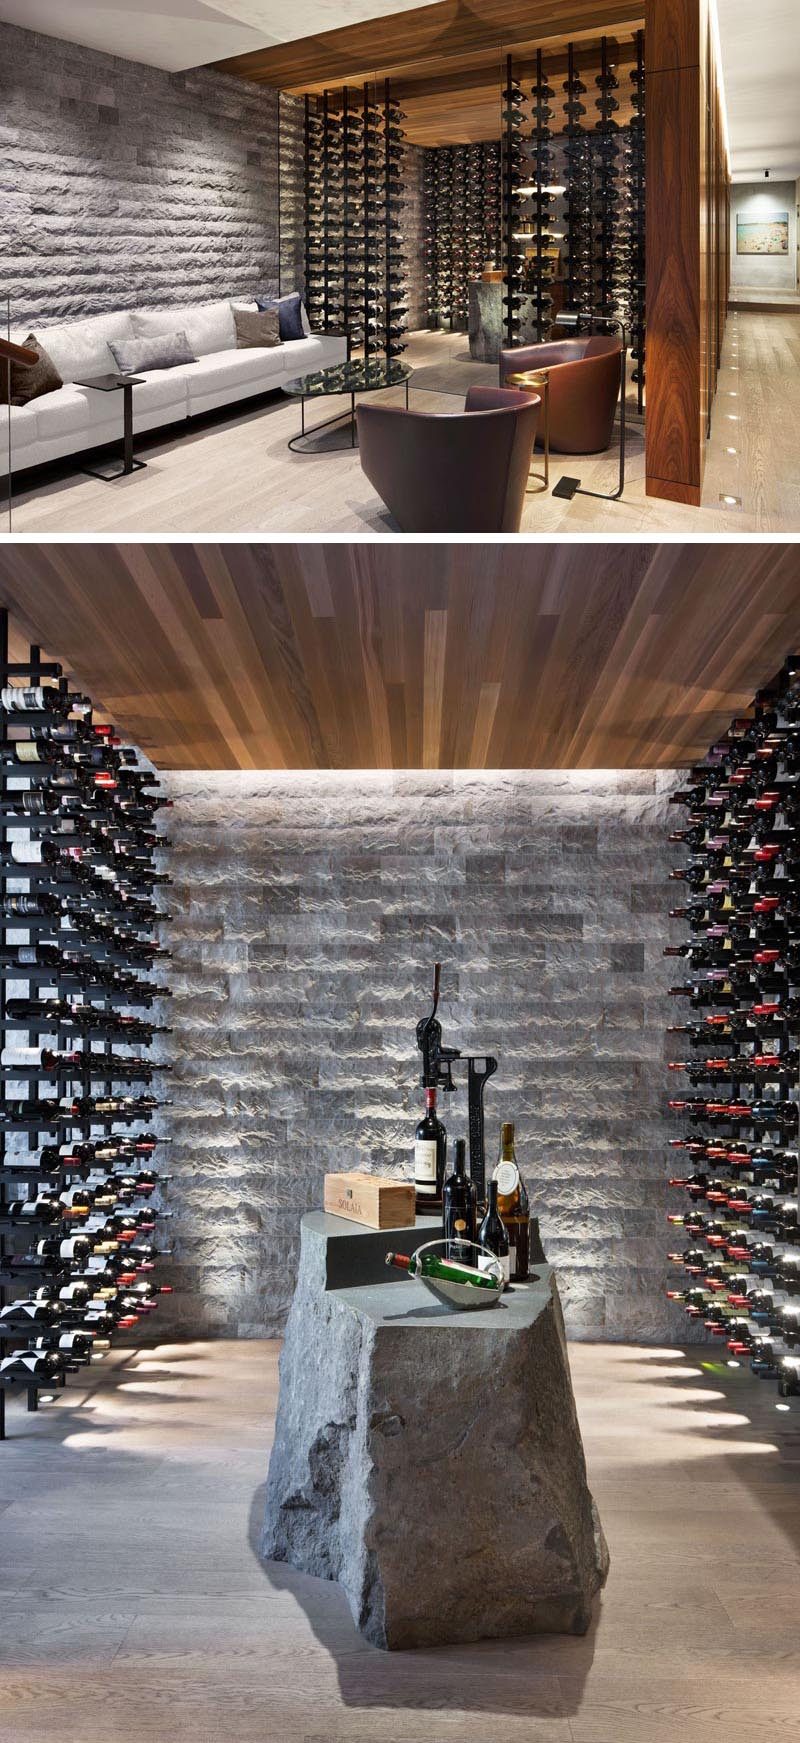 В этом современном винном погребе стеклянные стены, много места для хранения бутылок и каменный элемент, который можно использовать в качестве стола. #WineCellar #WineRoom #WineStorage